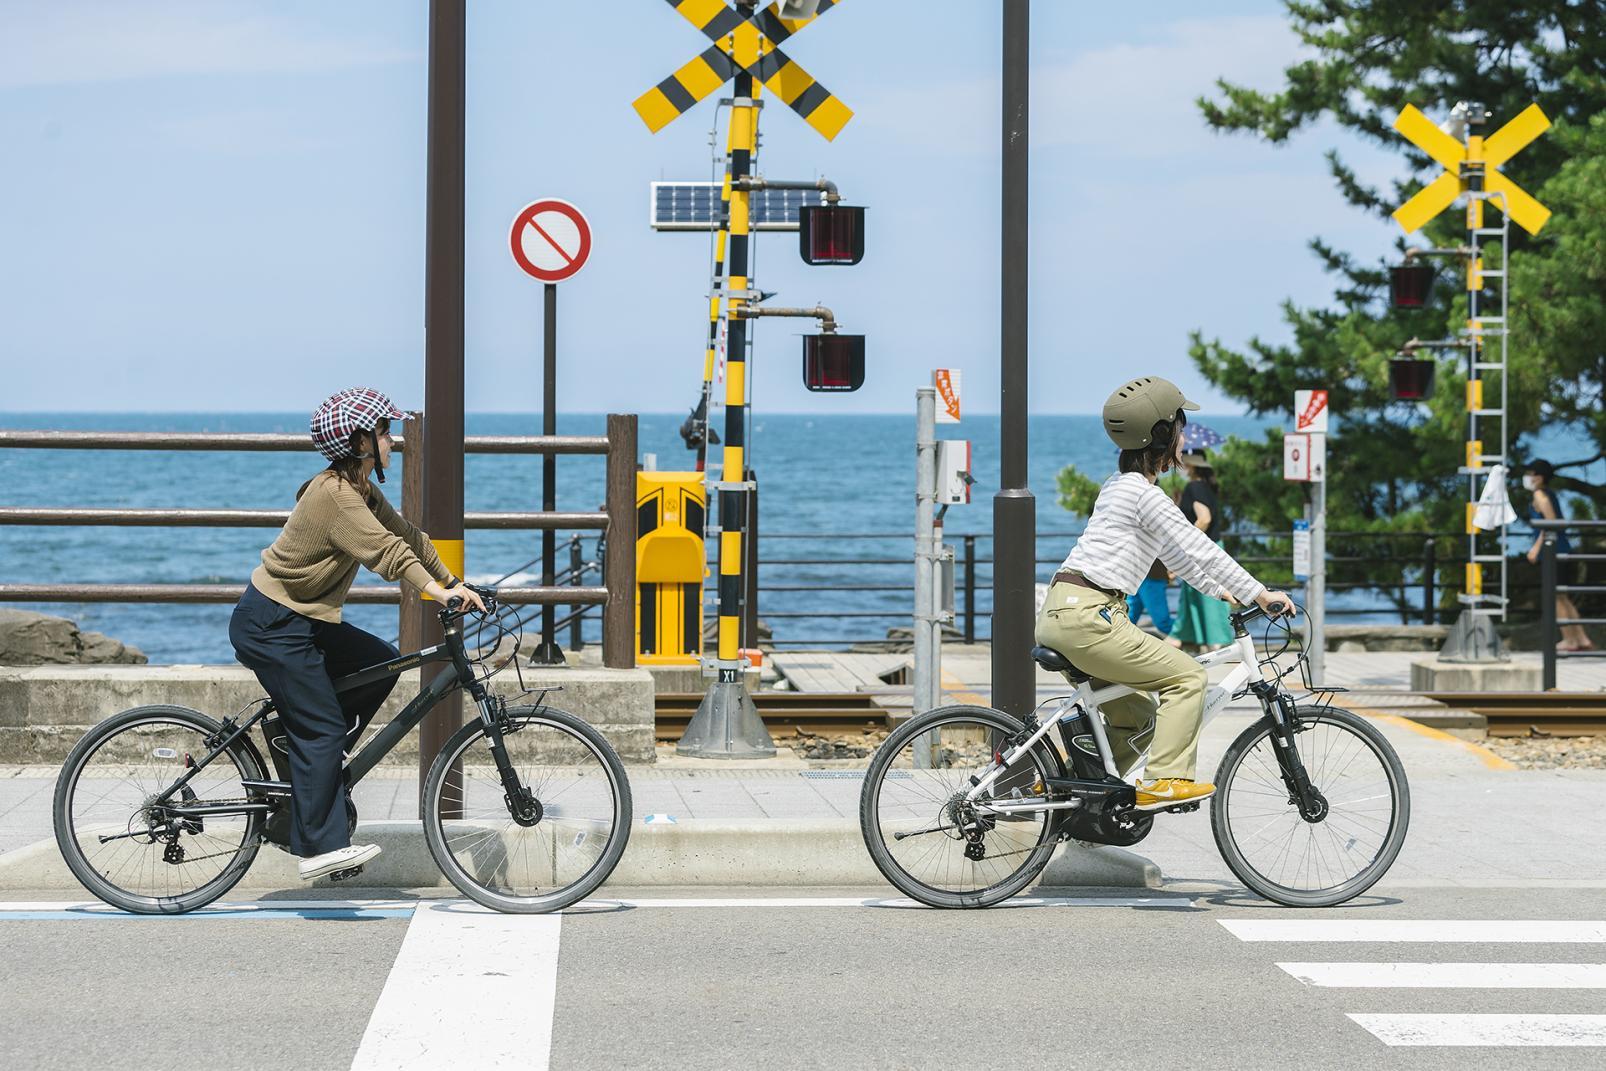 เช่าจักรยานแล้วมาปั่นที่ริมทะเลอ่าวโทยามะพร้อมกับชมวิวทะเลสวยๆกันเถอะ (เมืองฮิมิ - เมืองทาคาโอกะ จังหวัดโทยามะ)-1